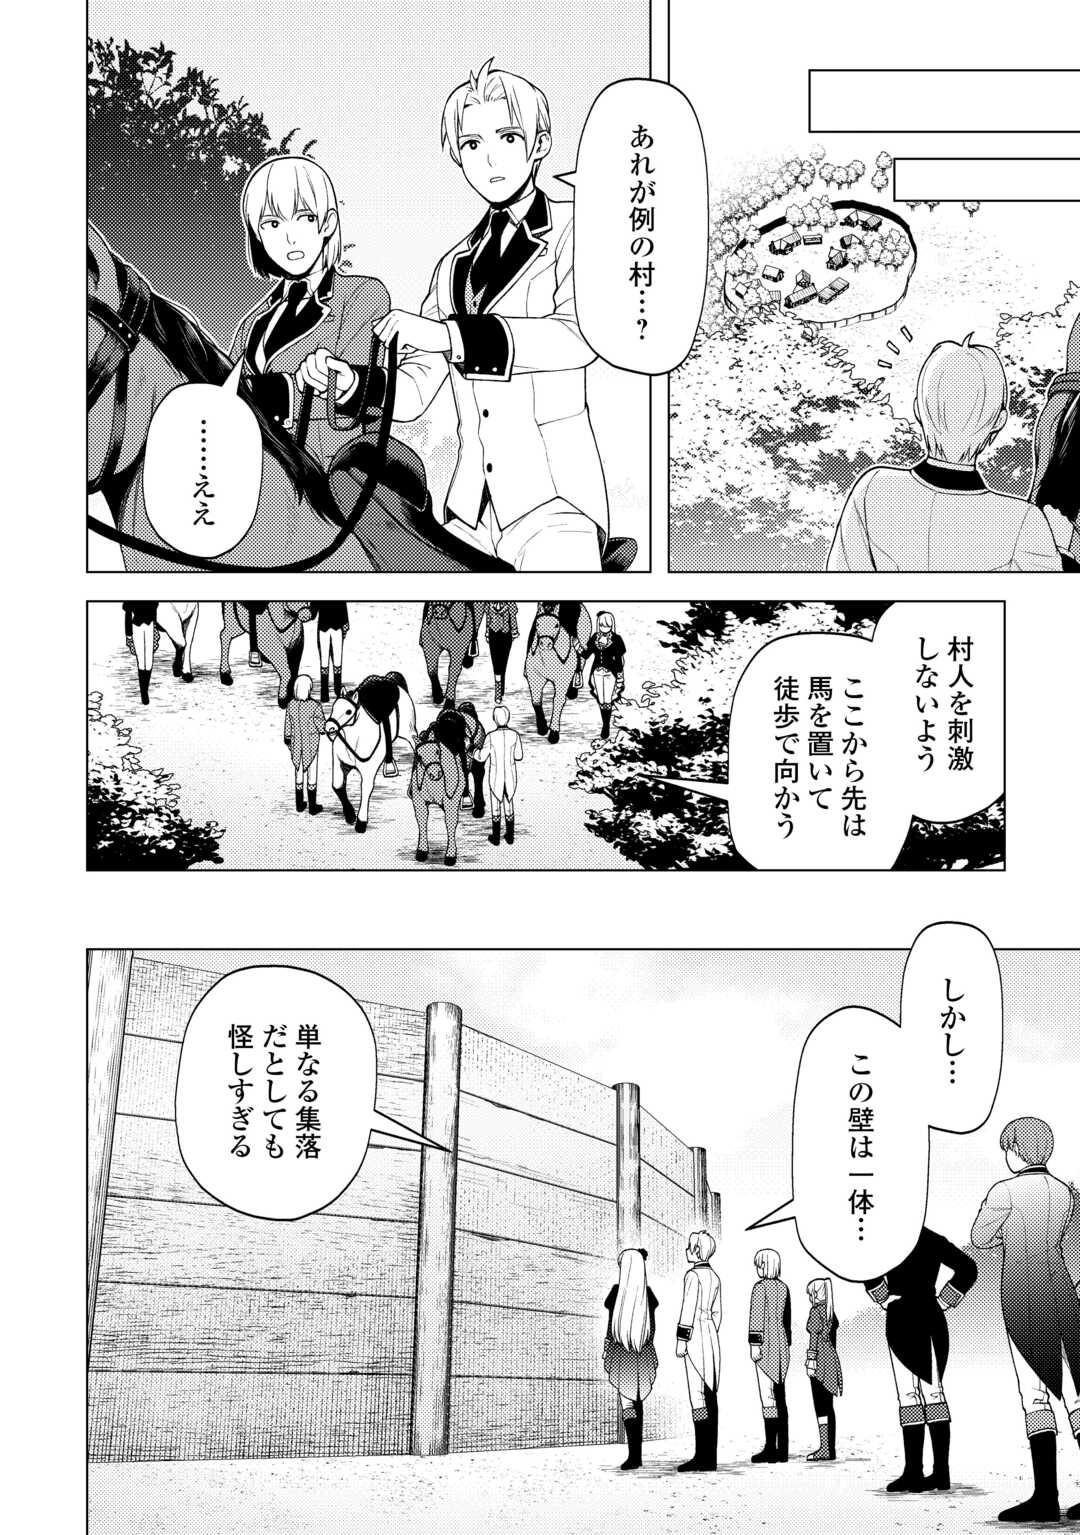 Zensei De Tsurai Omoi O Shita No De, Kamisama Ga Shazai Ni Kimashita - Chapter 31 - Page 2